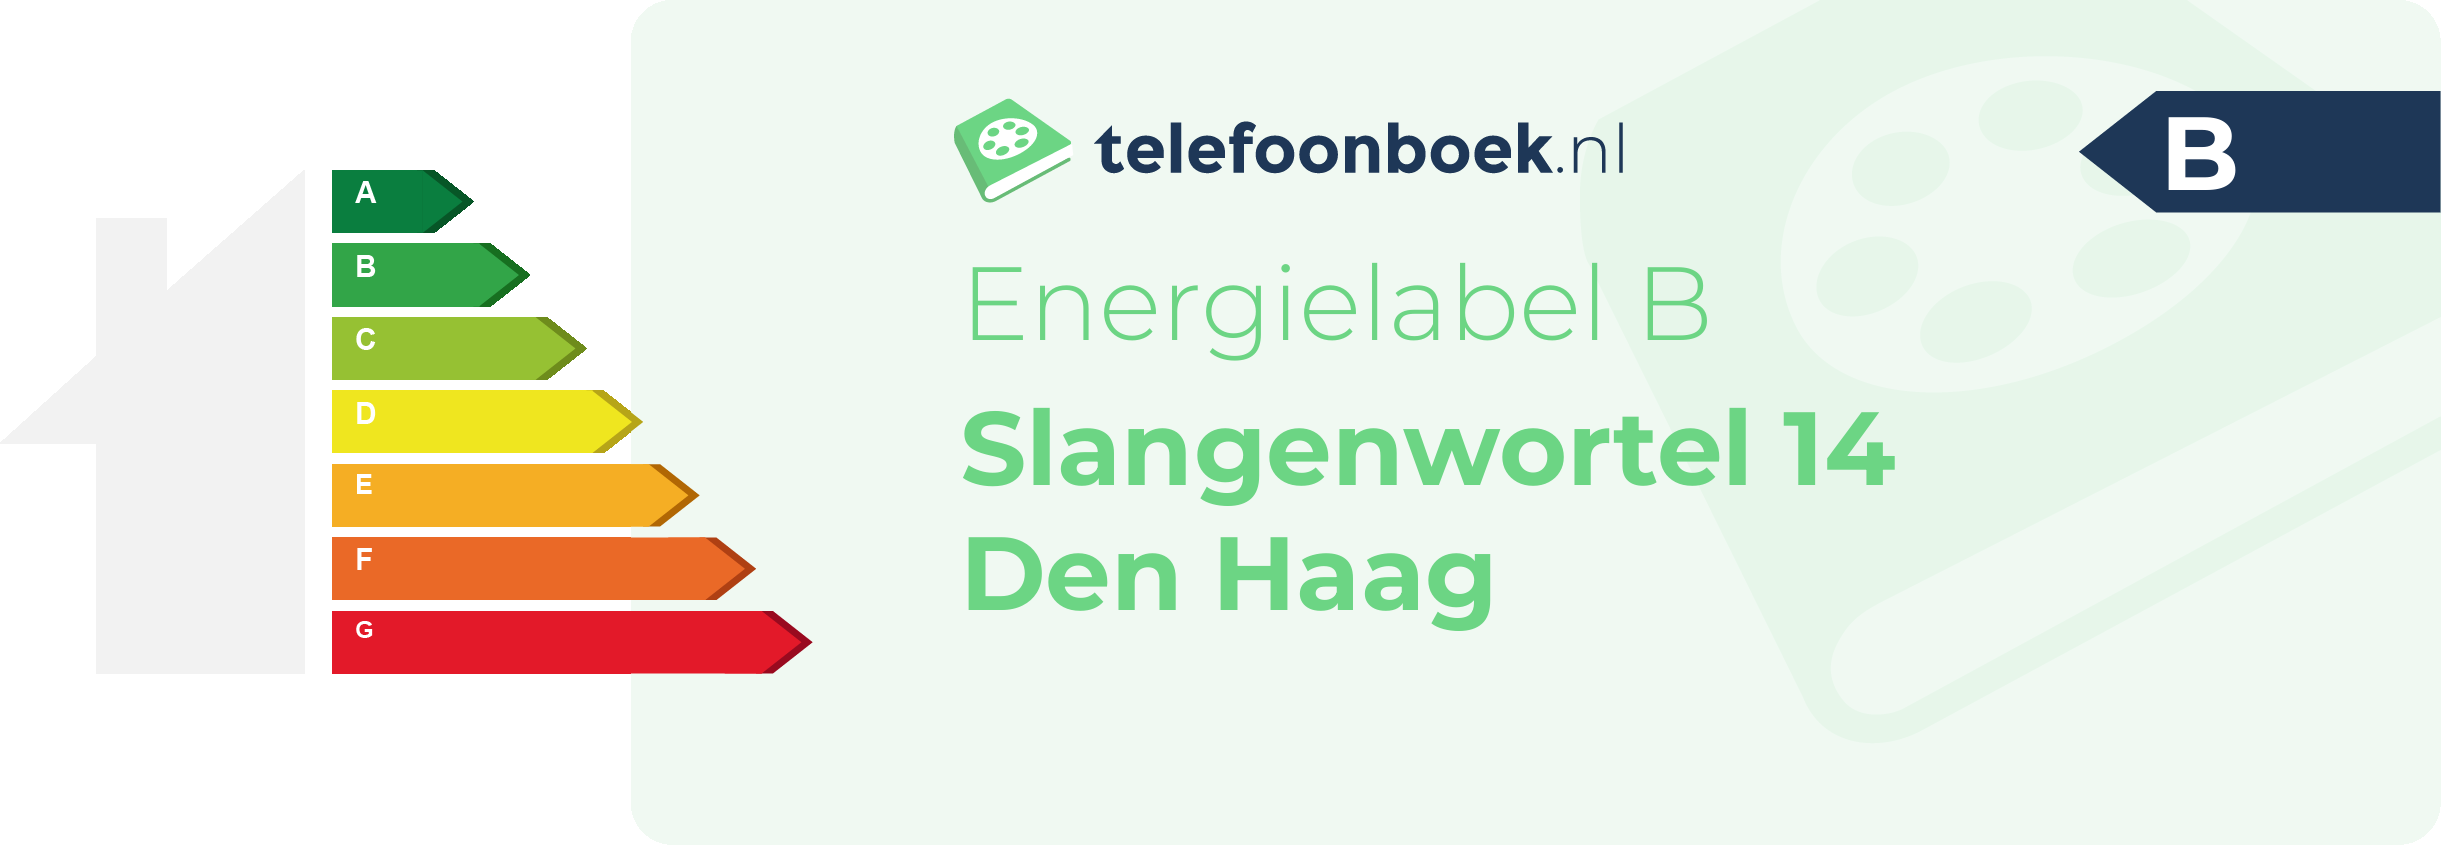 Energielabel Slangenwortel 14 Den Haag